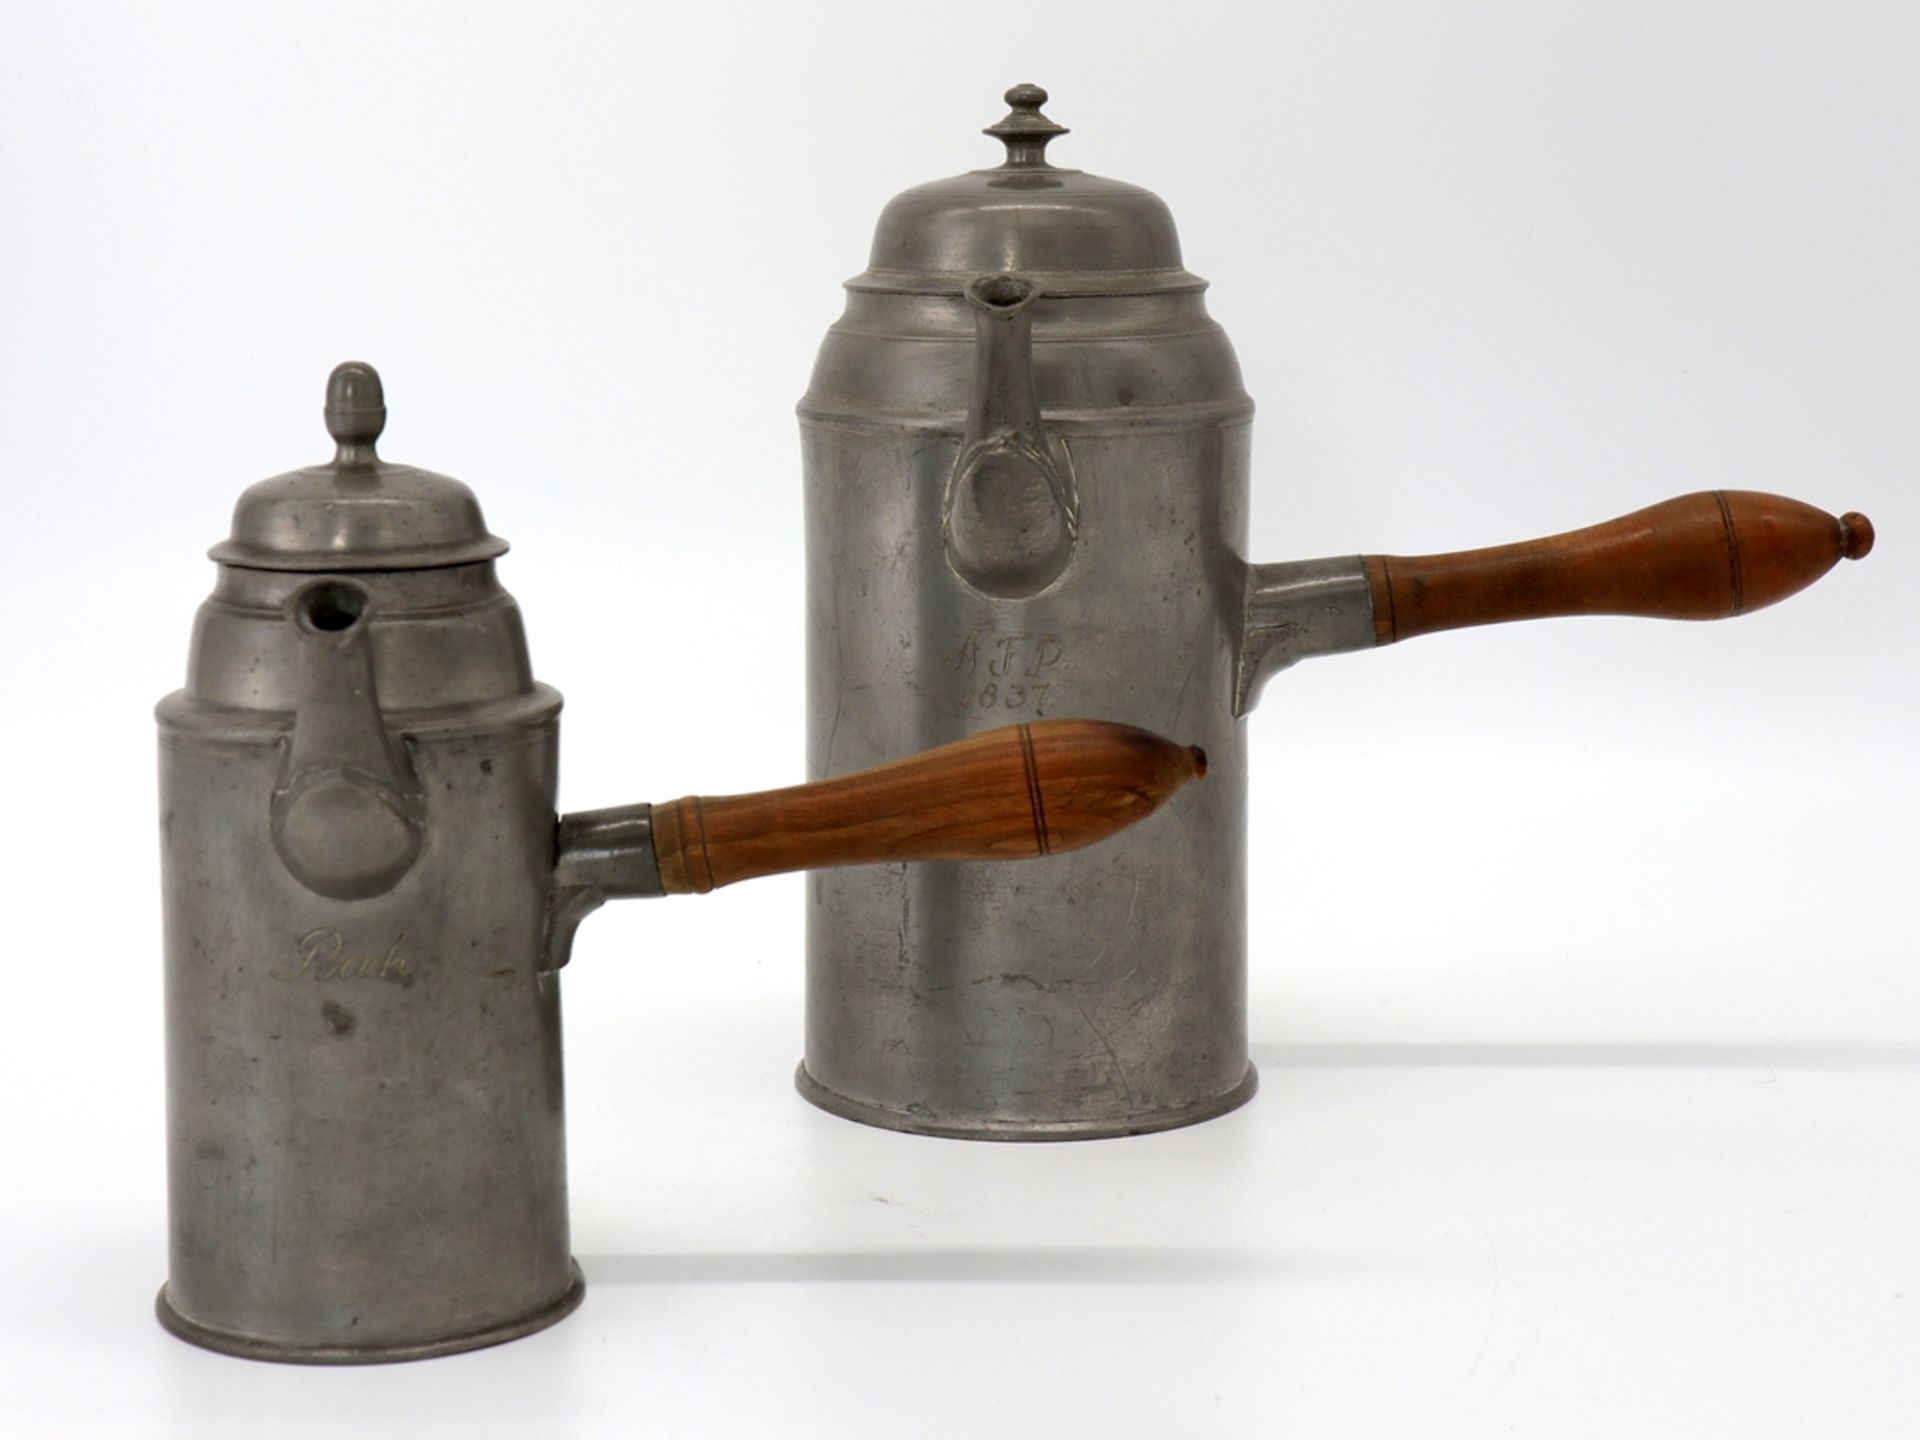 2 Saxon cocoa pots, dated 1837